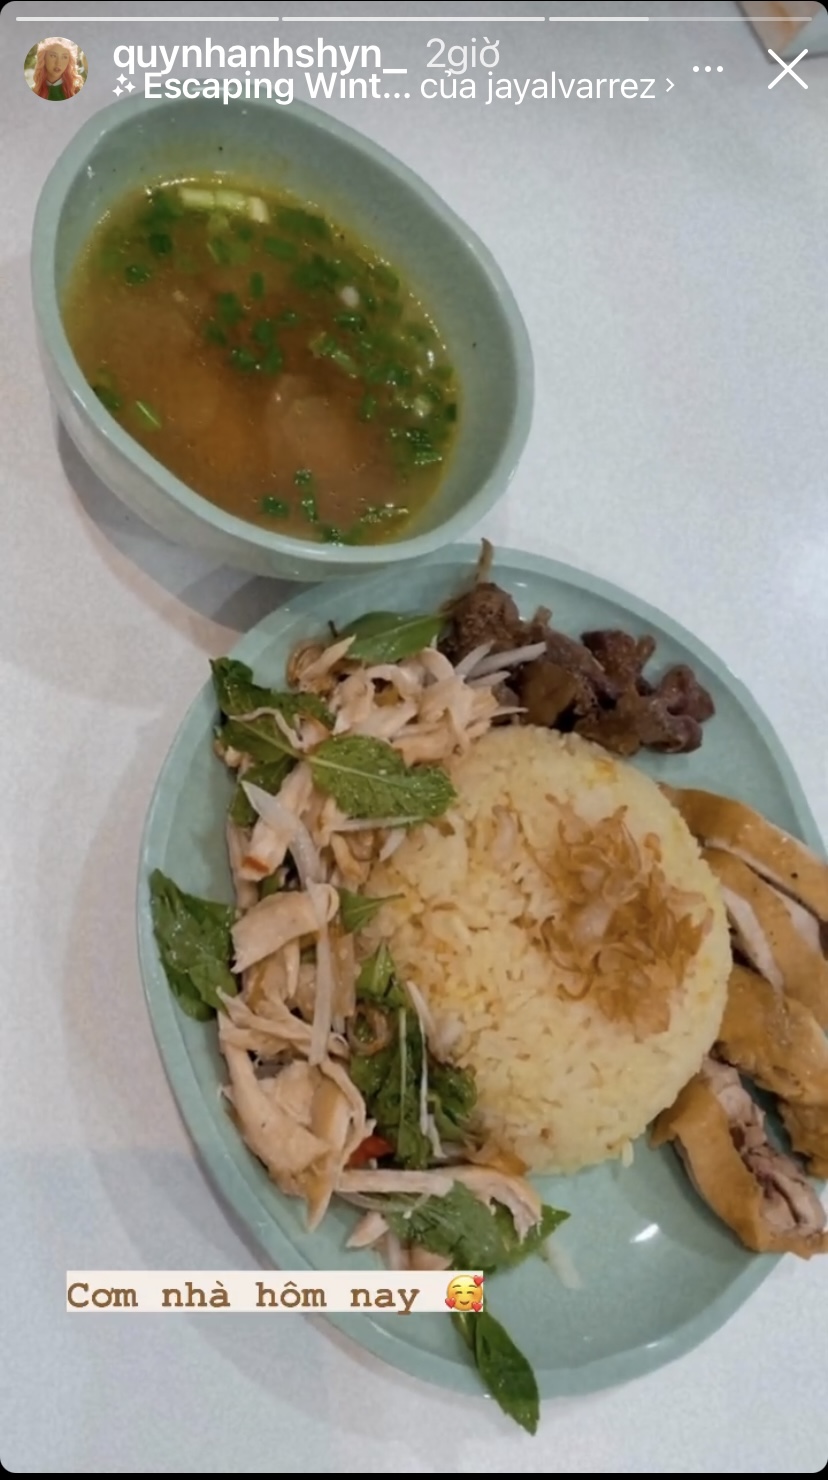 Quỳnh Anh Shyn và bữa cơm nhà vô cùng đẹp mắt với món cơm gà mềm thơm.